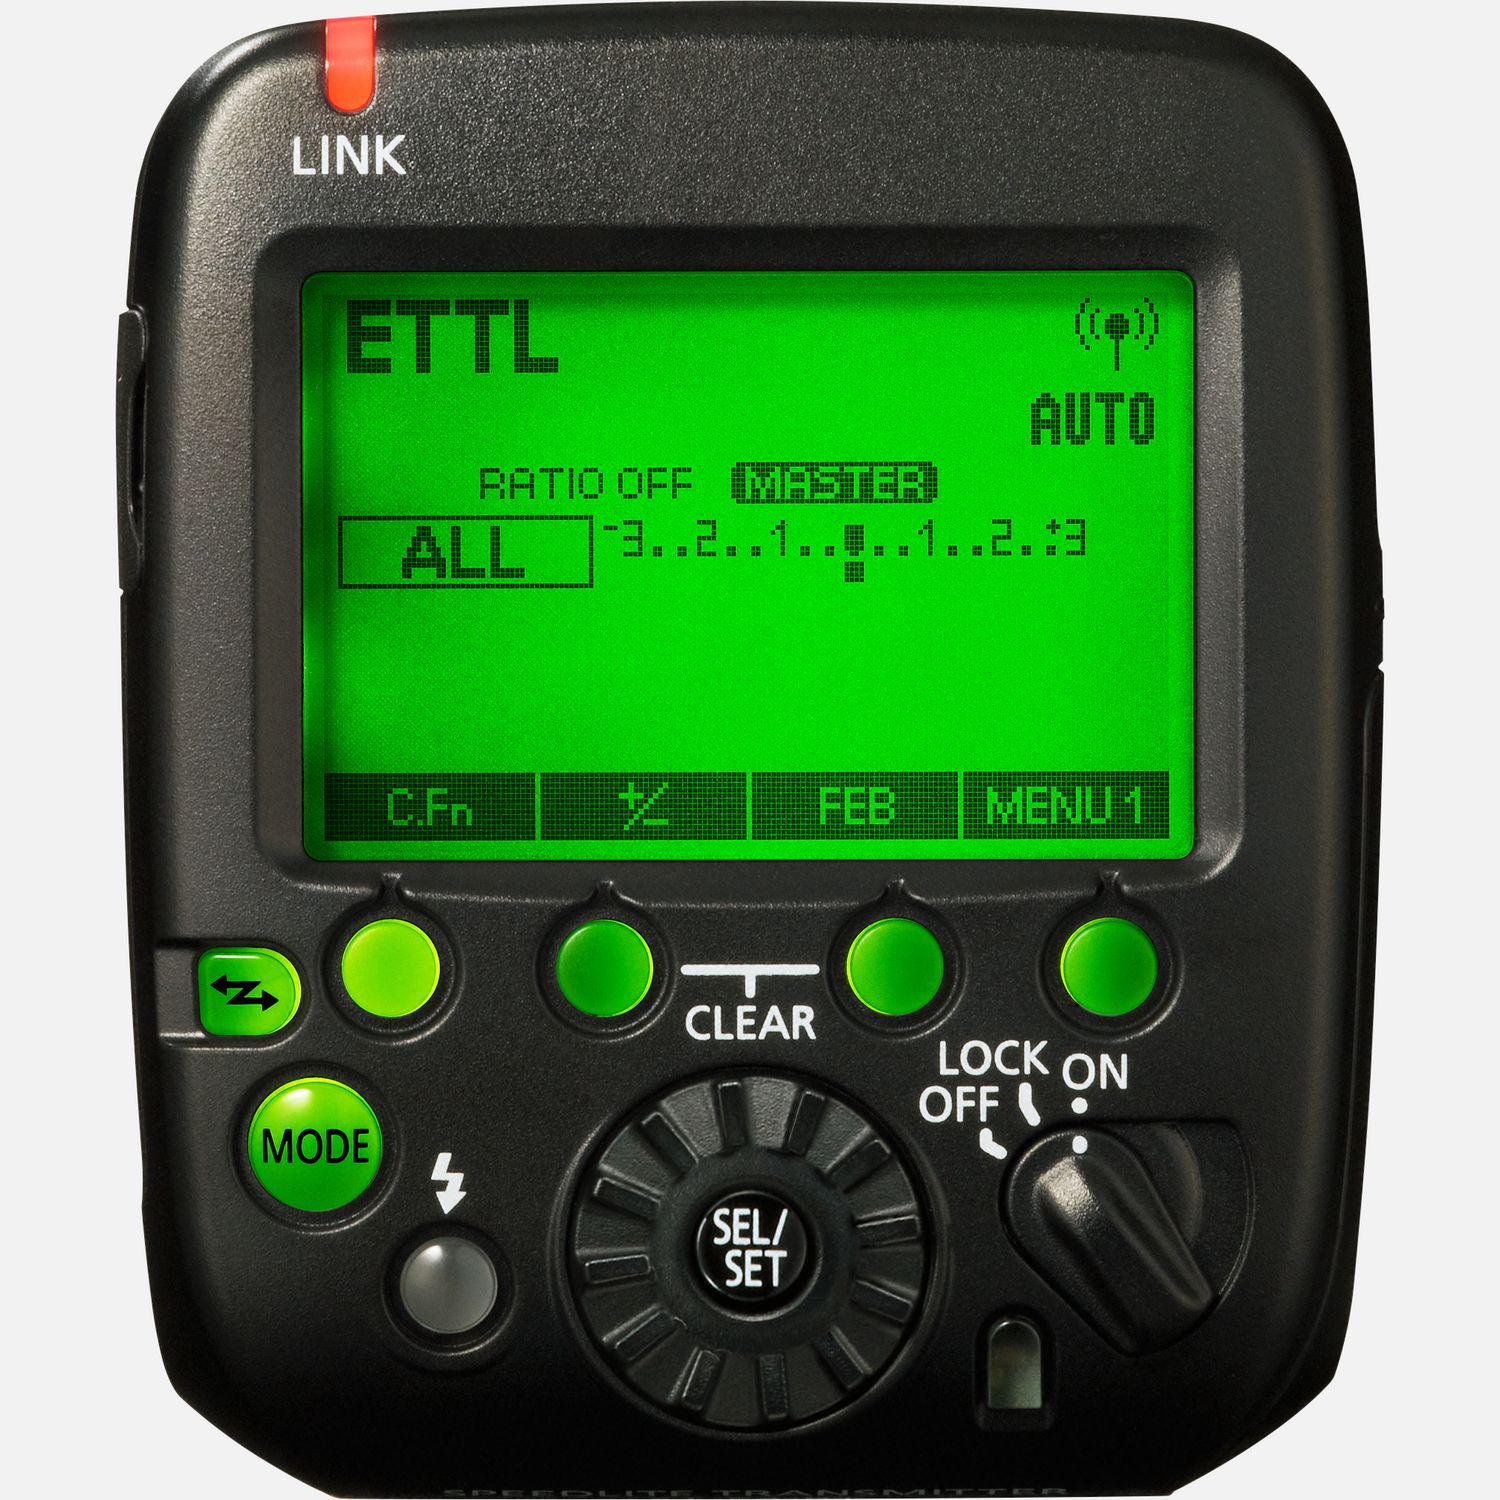 Lst kompatible Blitzgerte aus einer Entfernung von bis zu 30 Metern aus. Kontrolle ber Funkfrequenz ermglicht das sichere Bedienen auch wenn kein direkter Sichtkontakt besteht.  Vorteile      Blitz-Fernauslser auf Funkfrequenz          Staub- und Feuchtigkeitsschutz          Kamera-Fernauslser          Kontrolliert bis zu 15 Blitzgerte          Bestandteil des E-TTL II Blitzsystems          Lst ausgewhlte Speedlites aus bis zu 30 m aus              Kompatibilitt       EOS 40D*         EOS 5DS         EOS M6*         EOS-1D Mark II*         EOS 350D*         EOS 5D Mark II*         EOS 760D*         EOS M5*         EOS-1D Mark IV*         EOS 1200D*         EOS 300D*         EOS 5D Mark III         EOS 600D*         EOS 77D         EOS 7D*         EOS 7D II         EOS 80D         EOS D60*         EOS 4000D*         EOS-1D Mark III*         EOS-1Ds Mark III*         EOS 100D*         EOS 1100D*         EOS 200D         EOS 450D*         EOS 60D*         EOS 700D*         EOS 750D*         EOS-1D X         EOS-1Ds Mark II*         EOS M50*         EOS 30D*         EOS 500D*         EOS 650D         EOS-1D X Mark II         EOS-1D C         EOS 20D*         EOS 400D*         EOS 50D*         EOS 550D         EOS 5DS R         EOS M2*         EOS M3*         EOS R         EOS 250D         EOS 1300D*         EOS 60Da*         EOS 6D*         EOS 6D Mark II         EOS M*         EOS 2000D*         EOS 5D Mark IV         EOS D30*         EOS 70D         EOS 800D*         EOS 10D*         EOS M10*         EOS 5D*         PowerShot G5 X         PowerShot G3 X         PowerShot G1 X Mark III         EOS RP         EOS 90D         EOS M6 Mark II         EOS Ra         EOS-1D X Mark III         EOS 850D         EOS R5         EOS R6         EOS M50 Mark II         EOS R6 Mark II